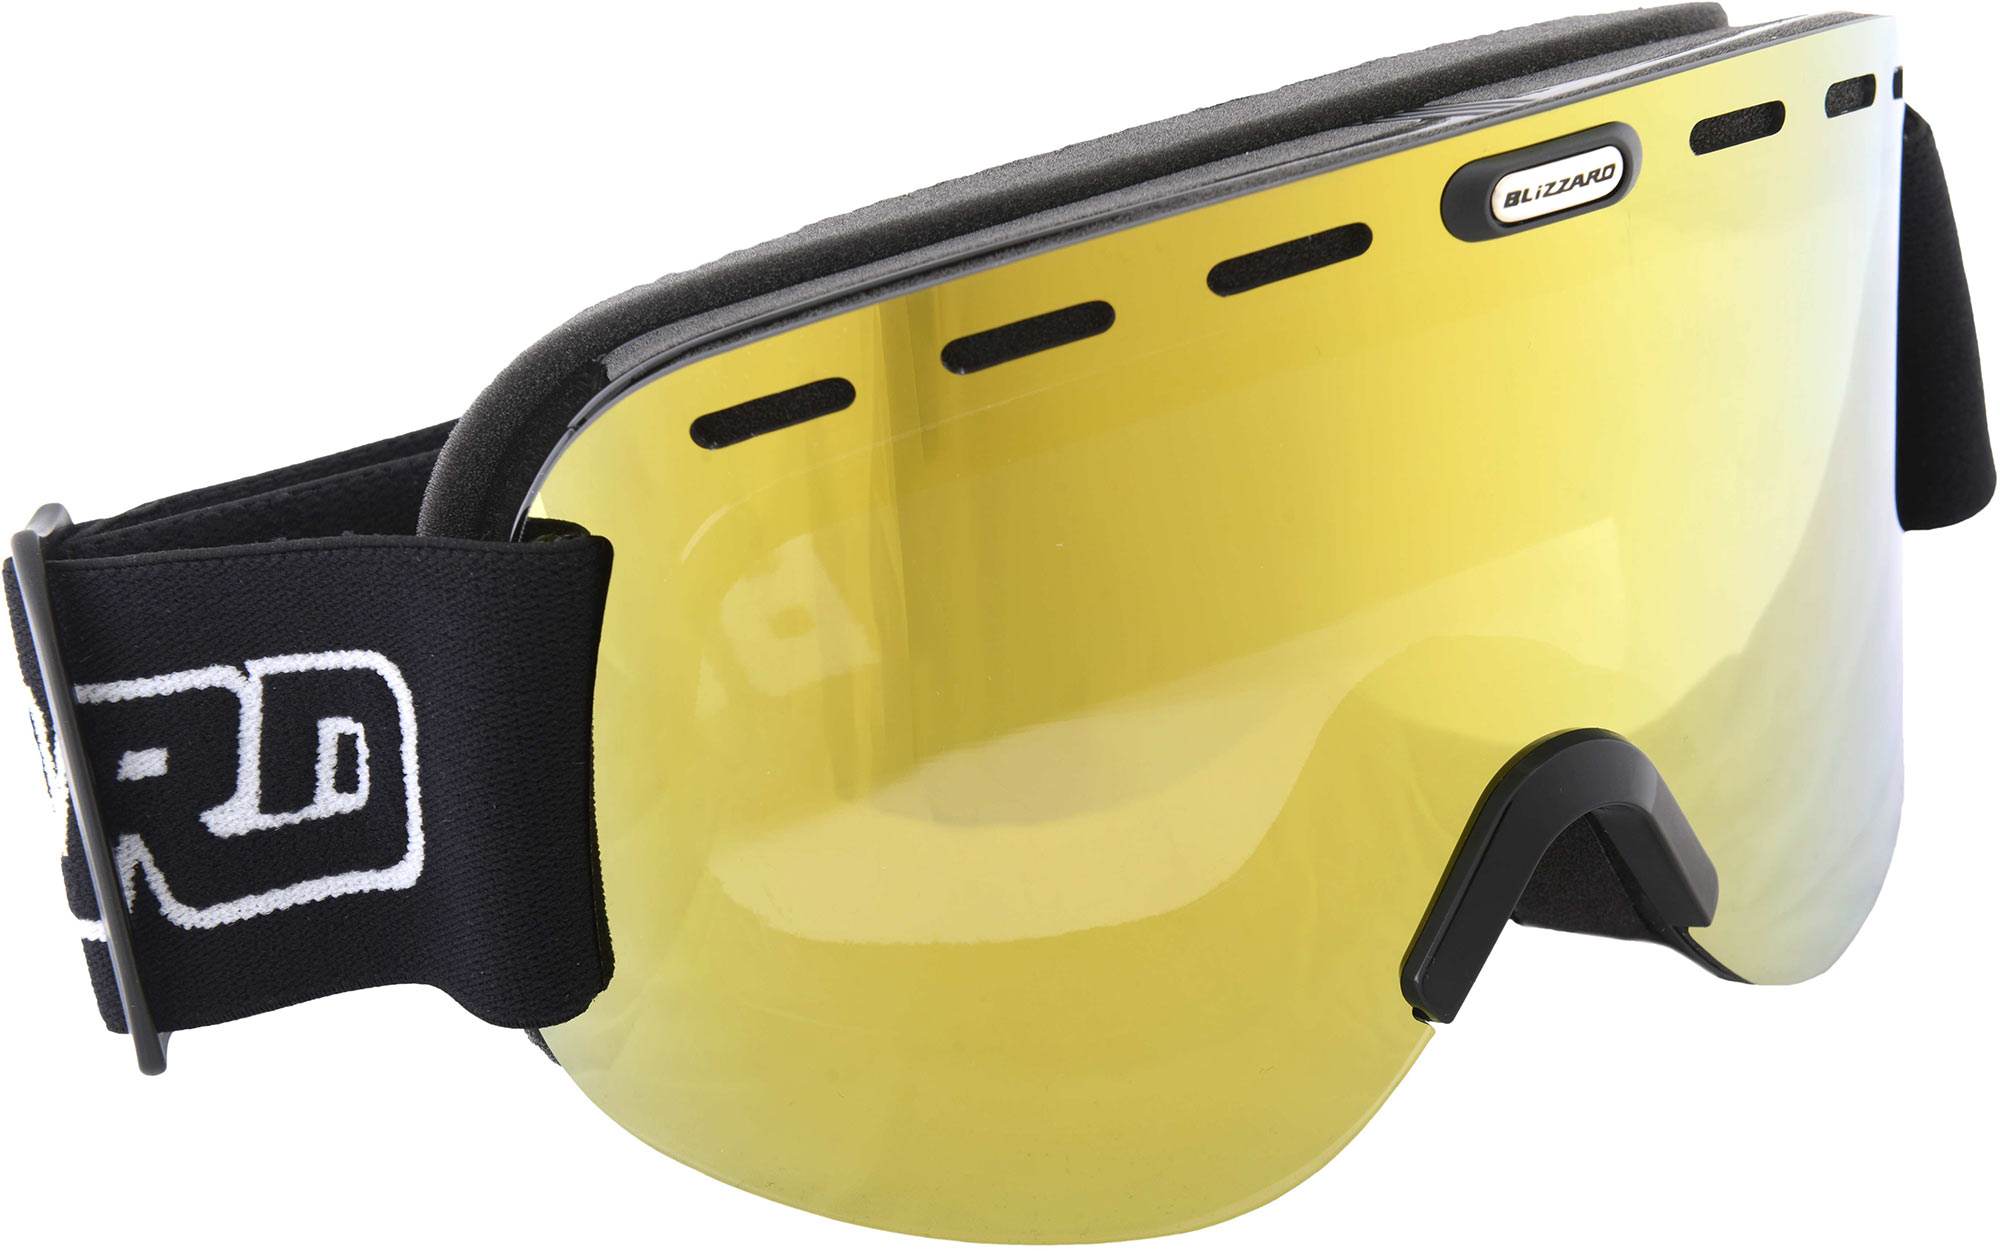 SKI GOGGLES 922 - Ski Goggles